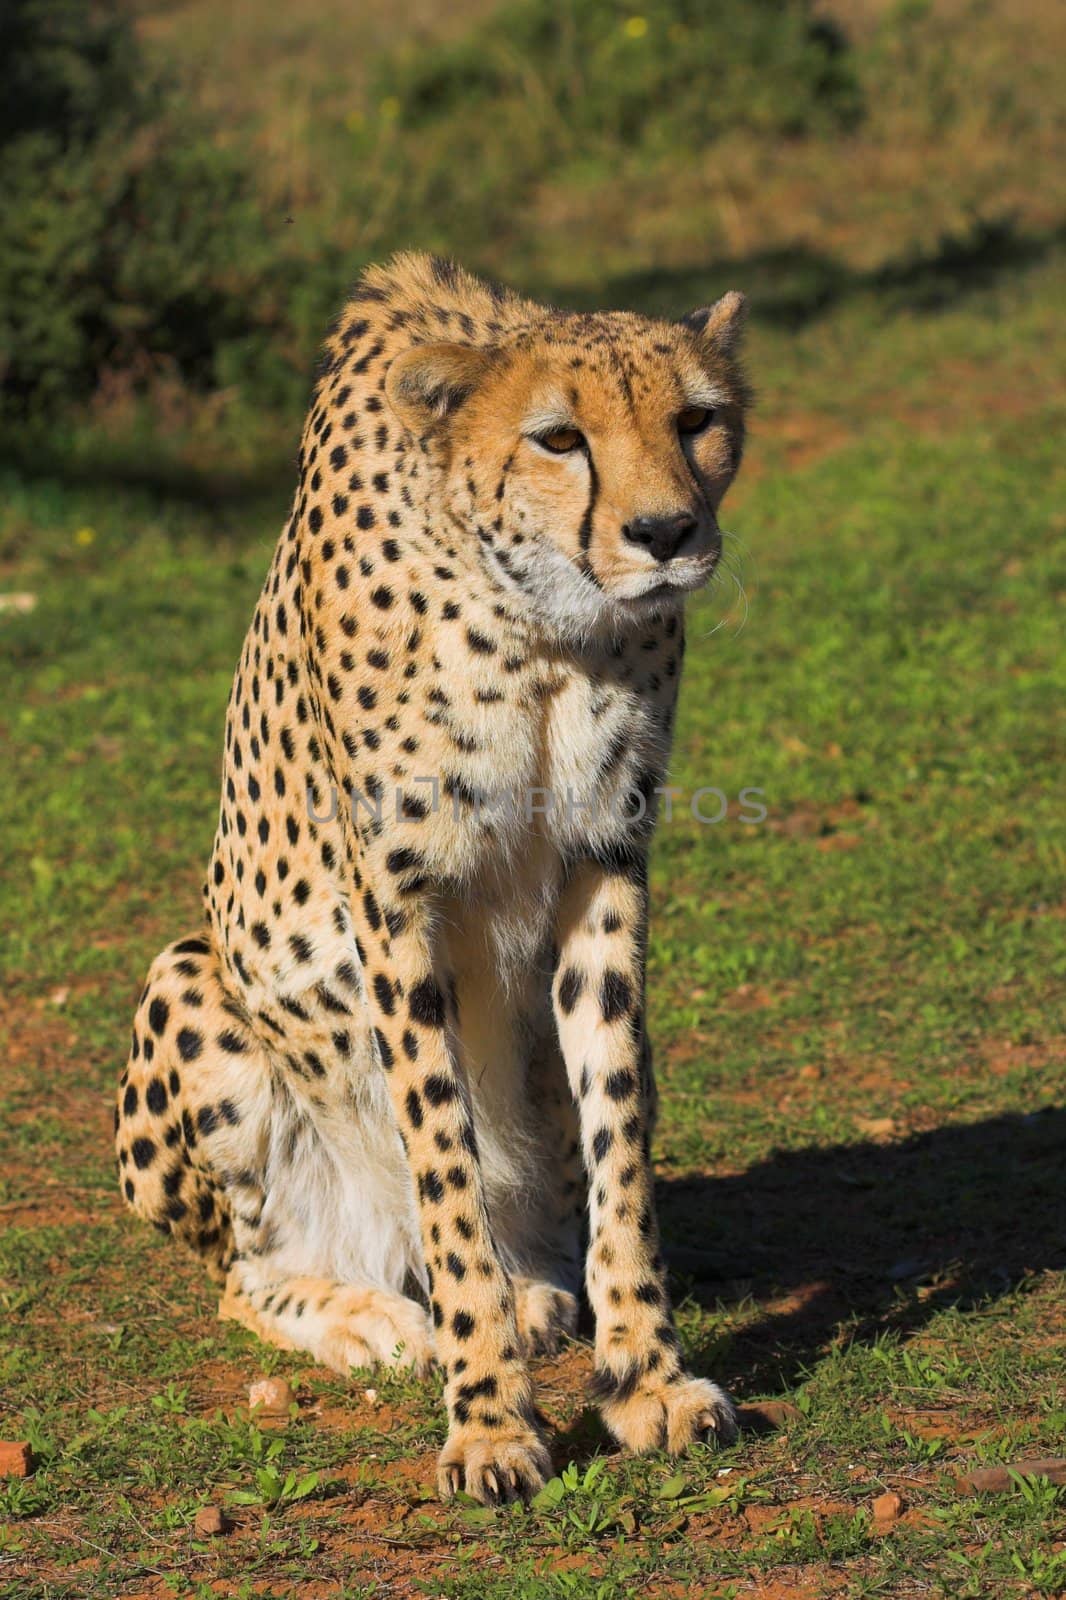 Cheetah by nightowlza